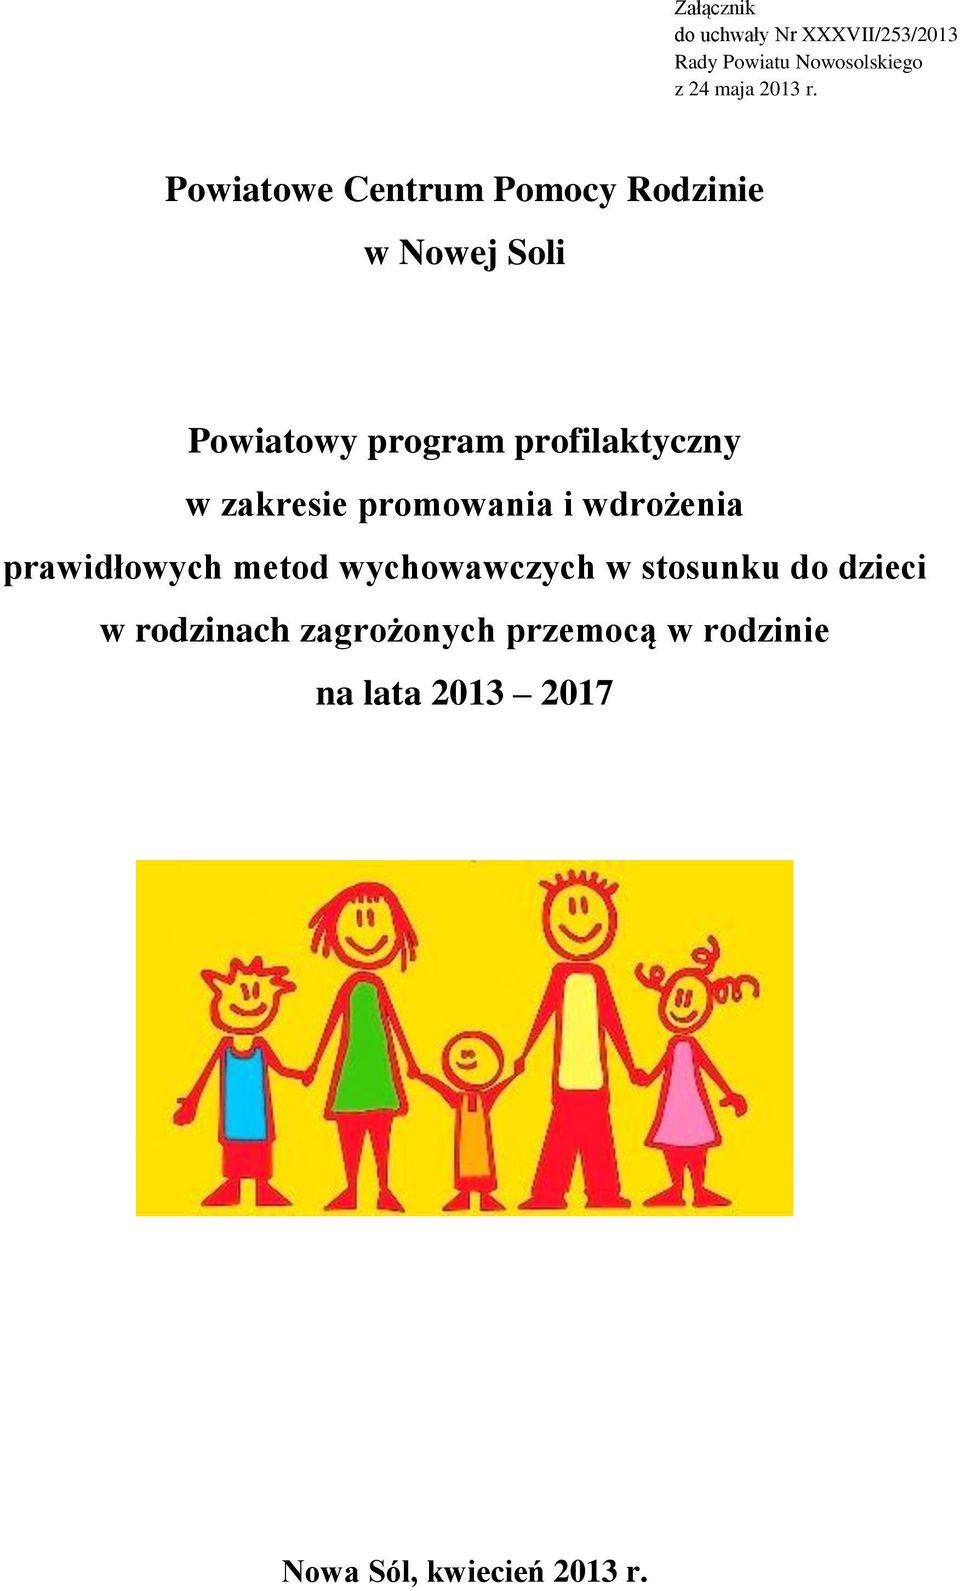 zakresie promowania i wdrożenia prawidłowych metod wychowawczych w stosunku do dzieci